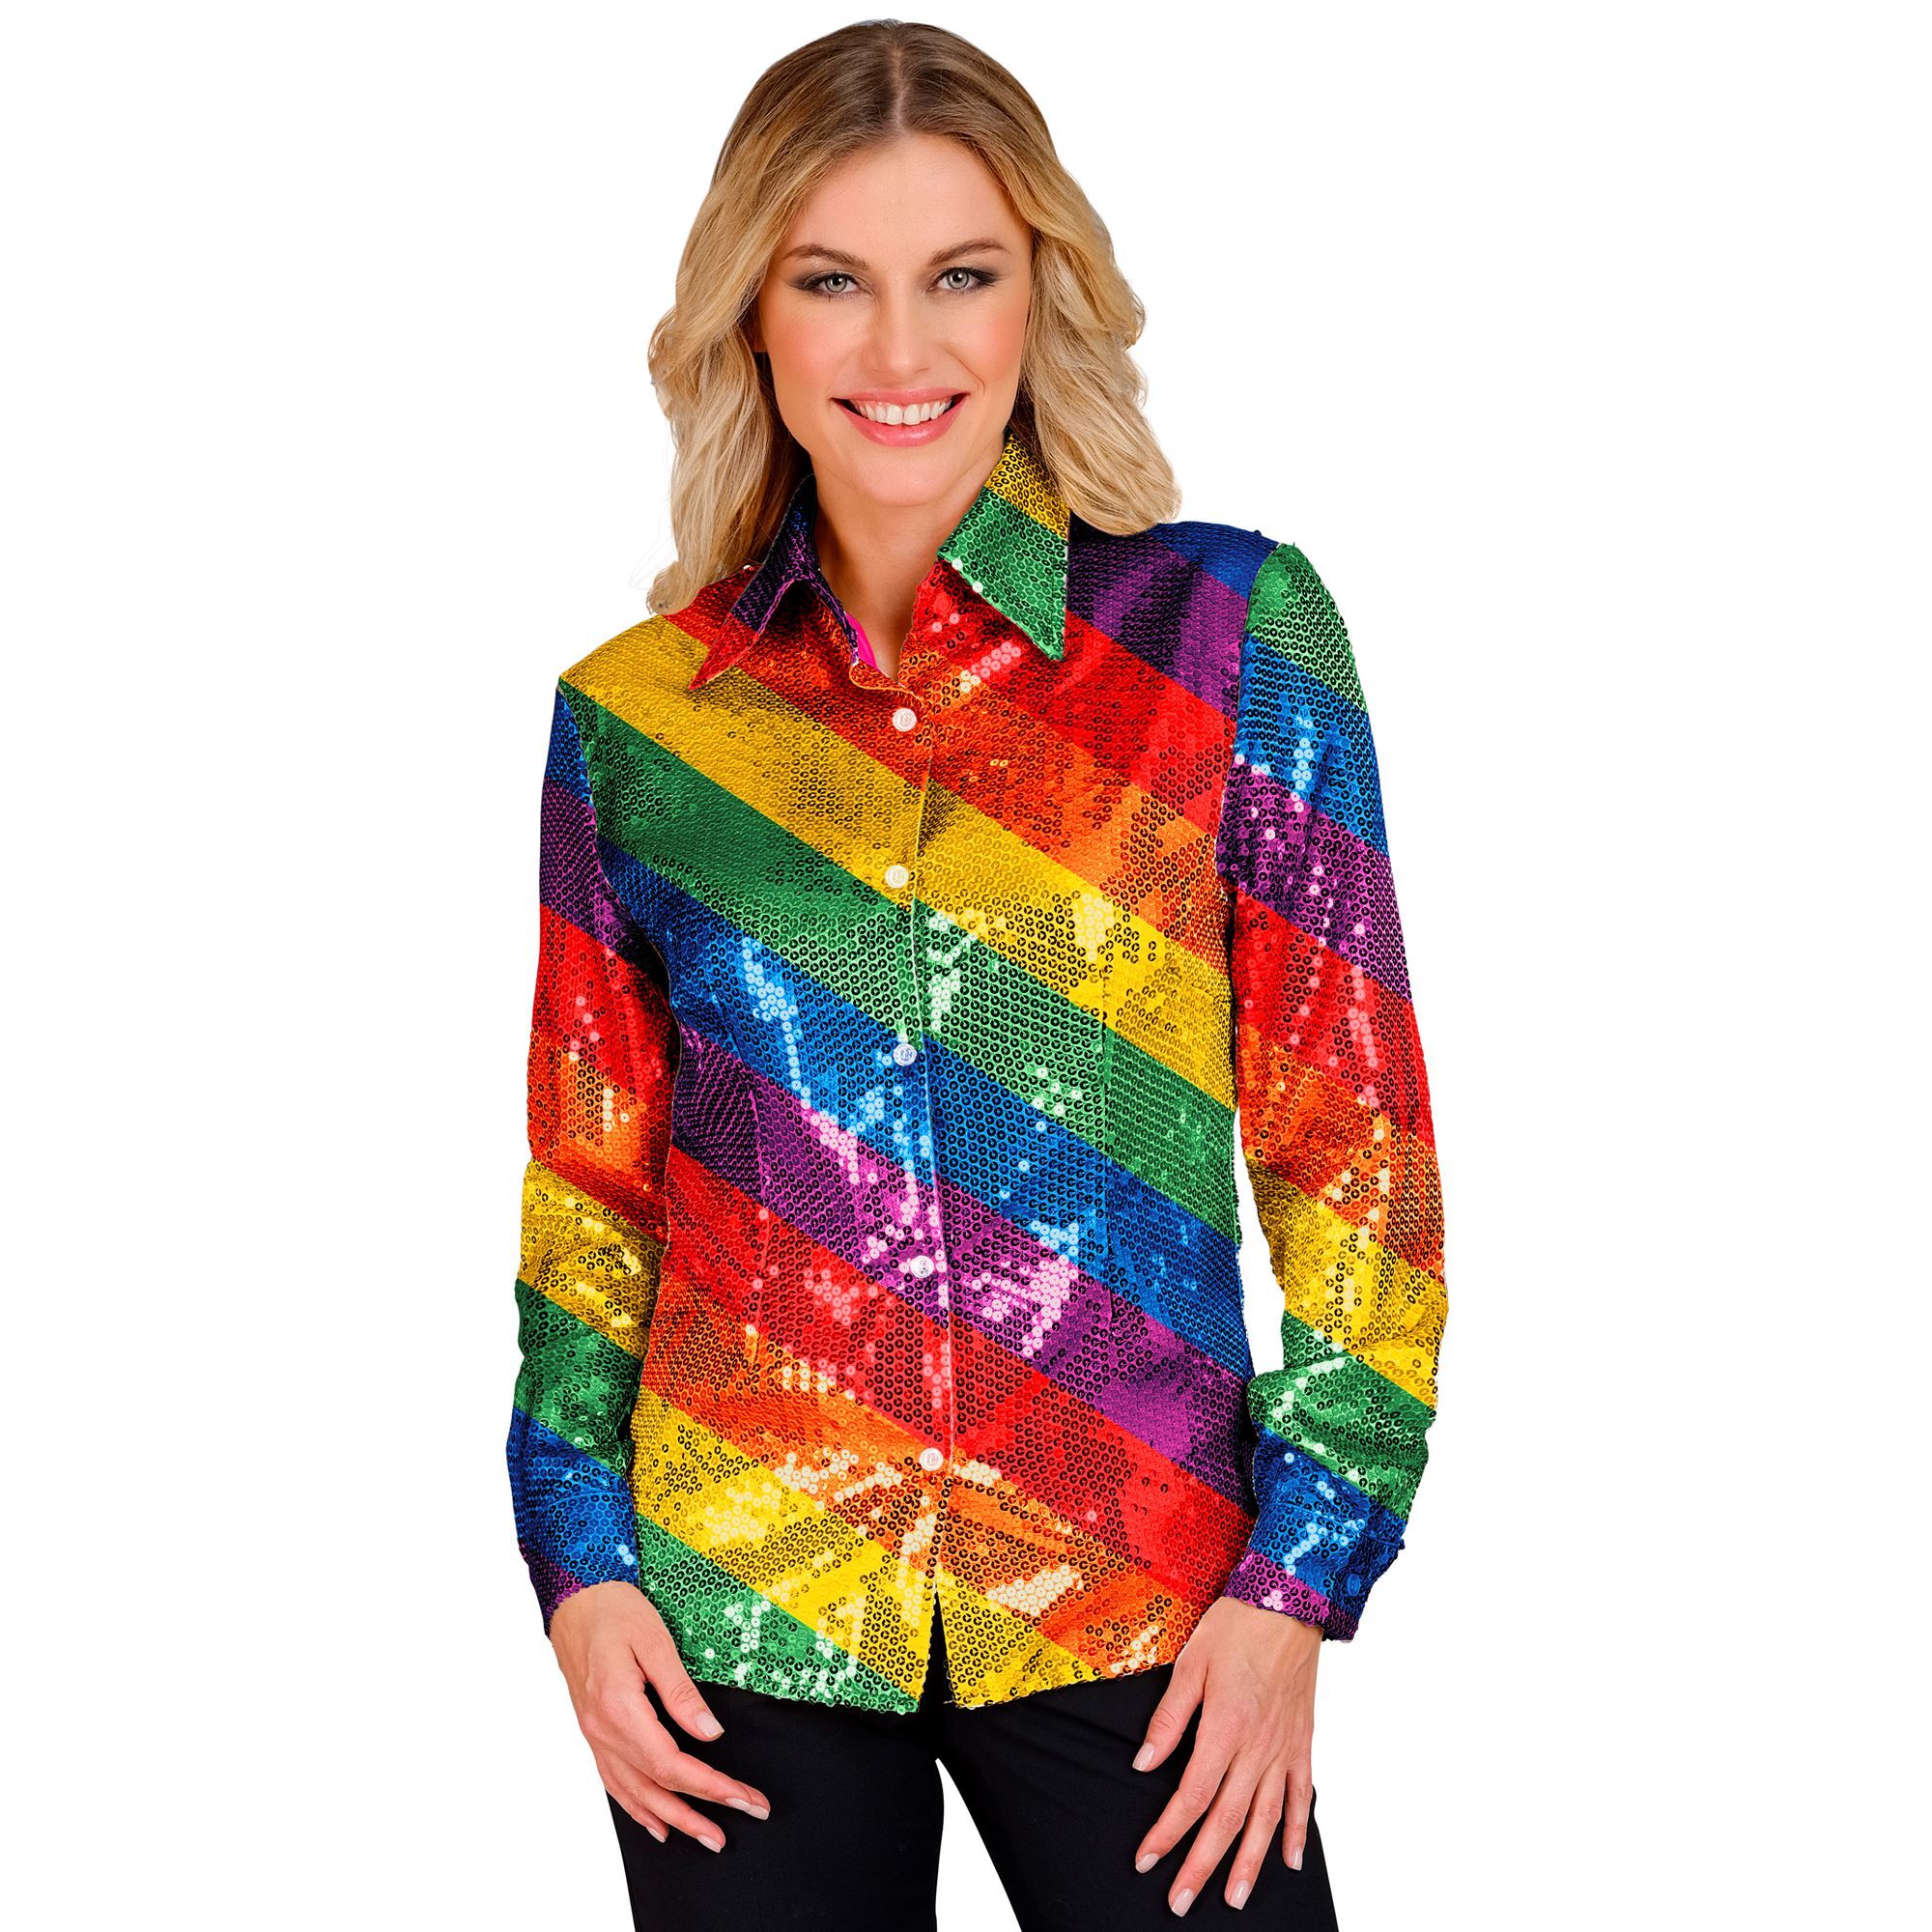 Fleurige pailletten blouse voor dames in regenboogkleuren perfect voor kleurrijke feestjes